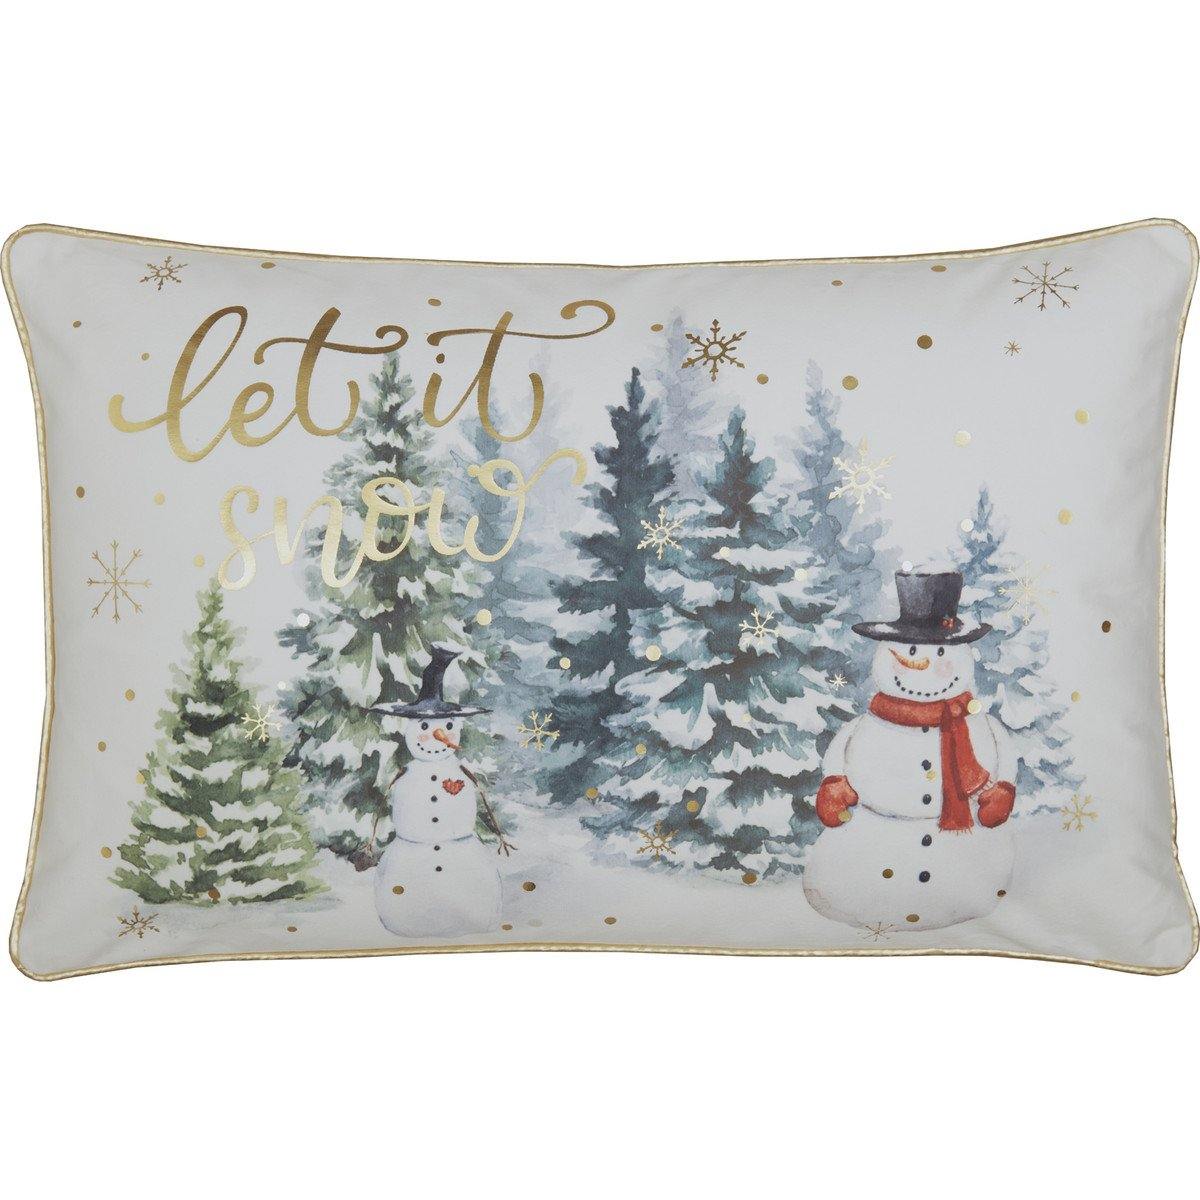 Let It Snow Pillow 14x22 - The Fox Decor